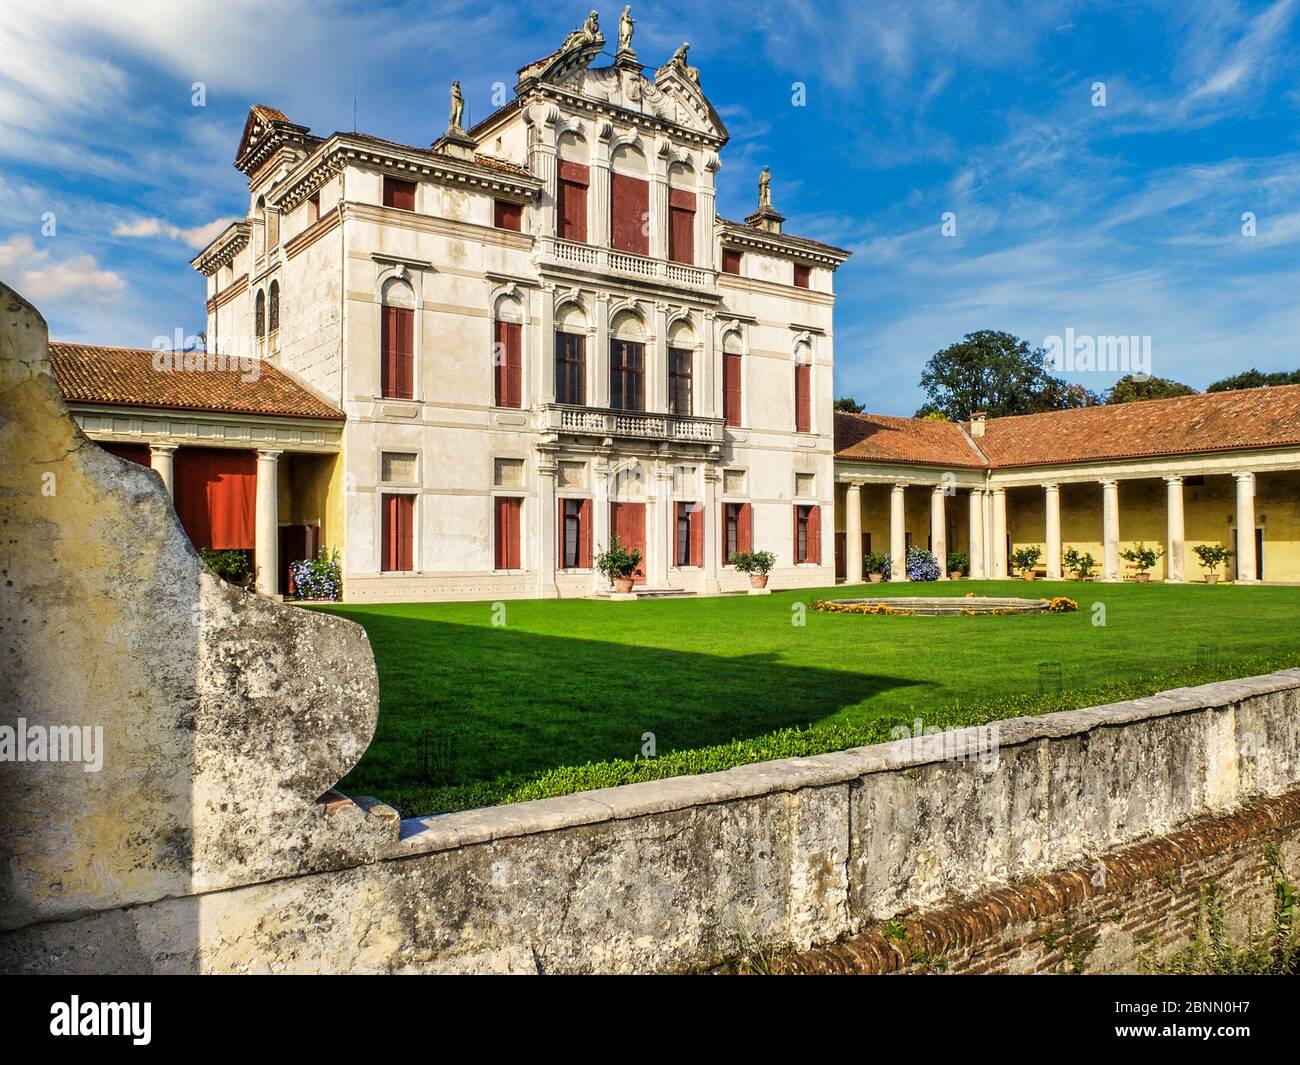 Villa Angarano is a Venetian villa located in Bassano del Grappa (Province of Vicenza). Originally conceived by Andrea Palladio around 1548. Stock Photo